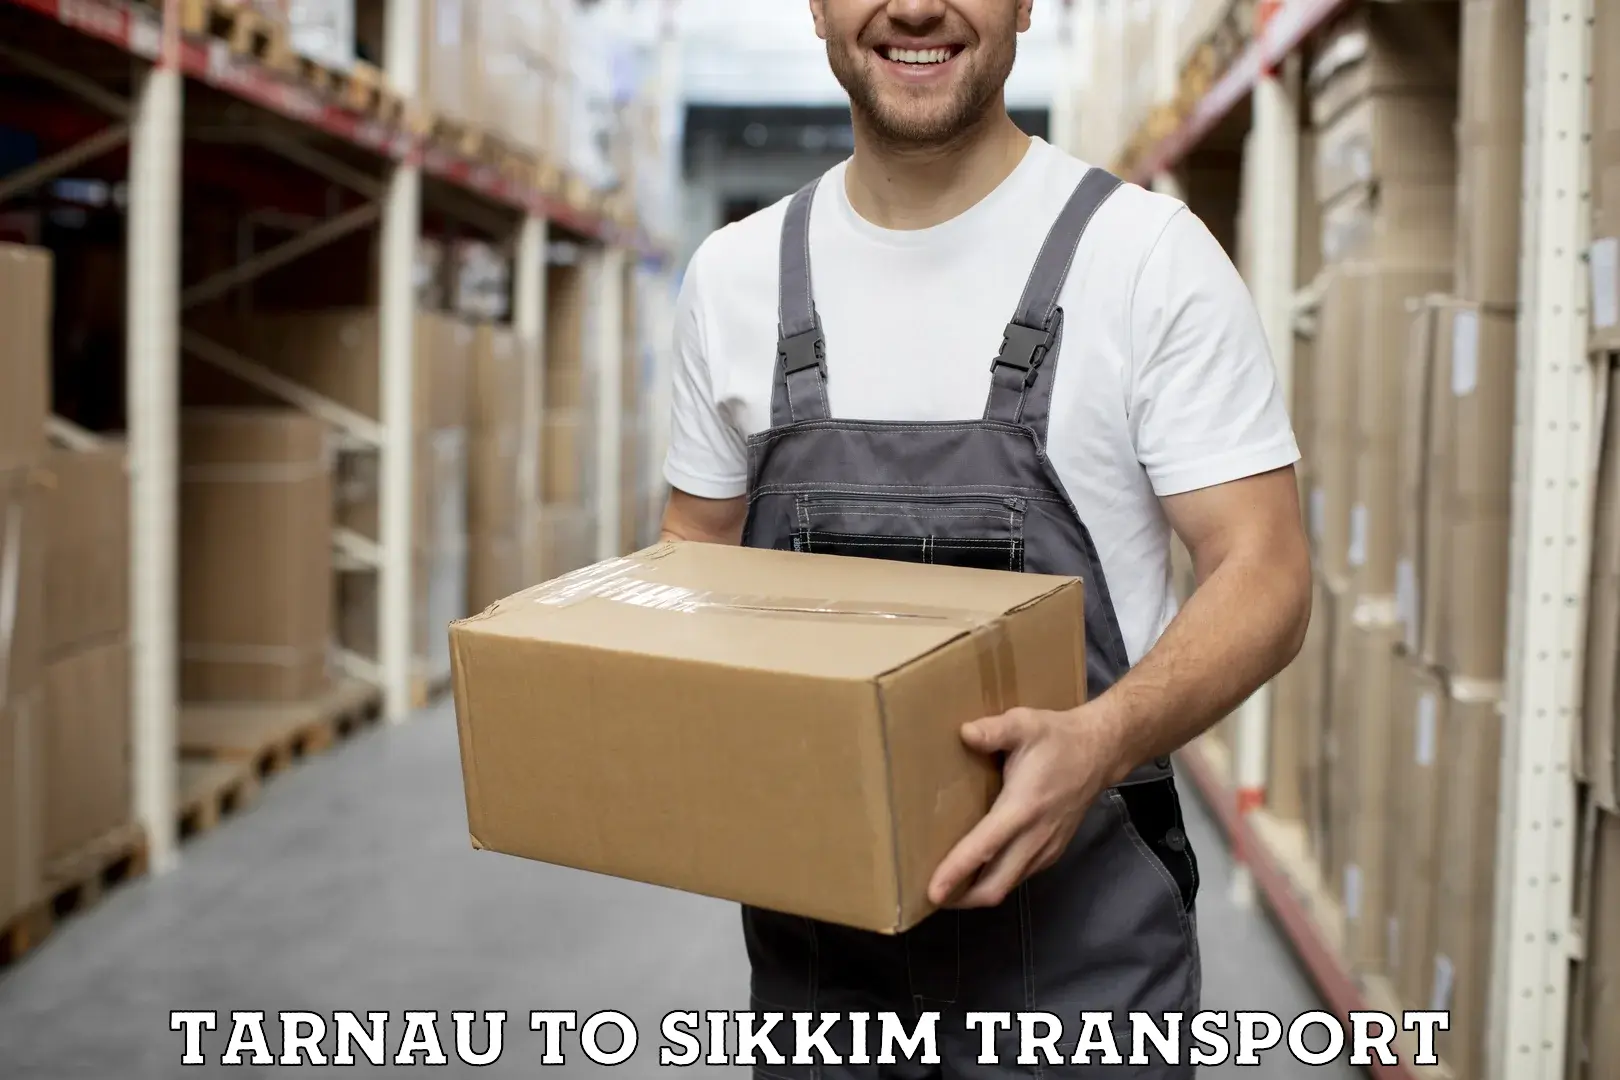 Furniture transport service Tarnau to Mangan